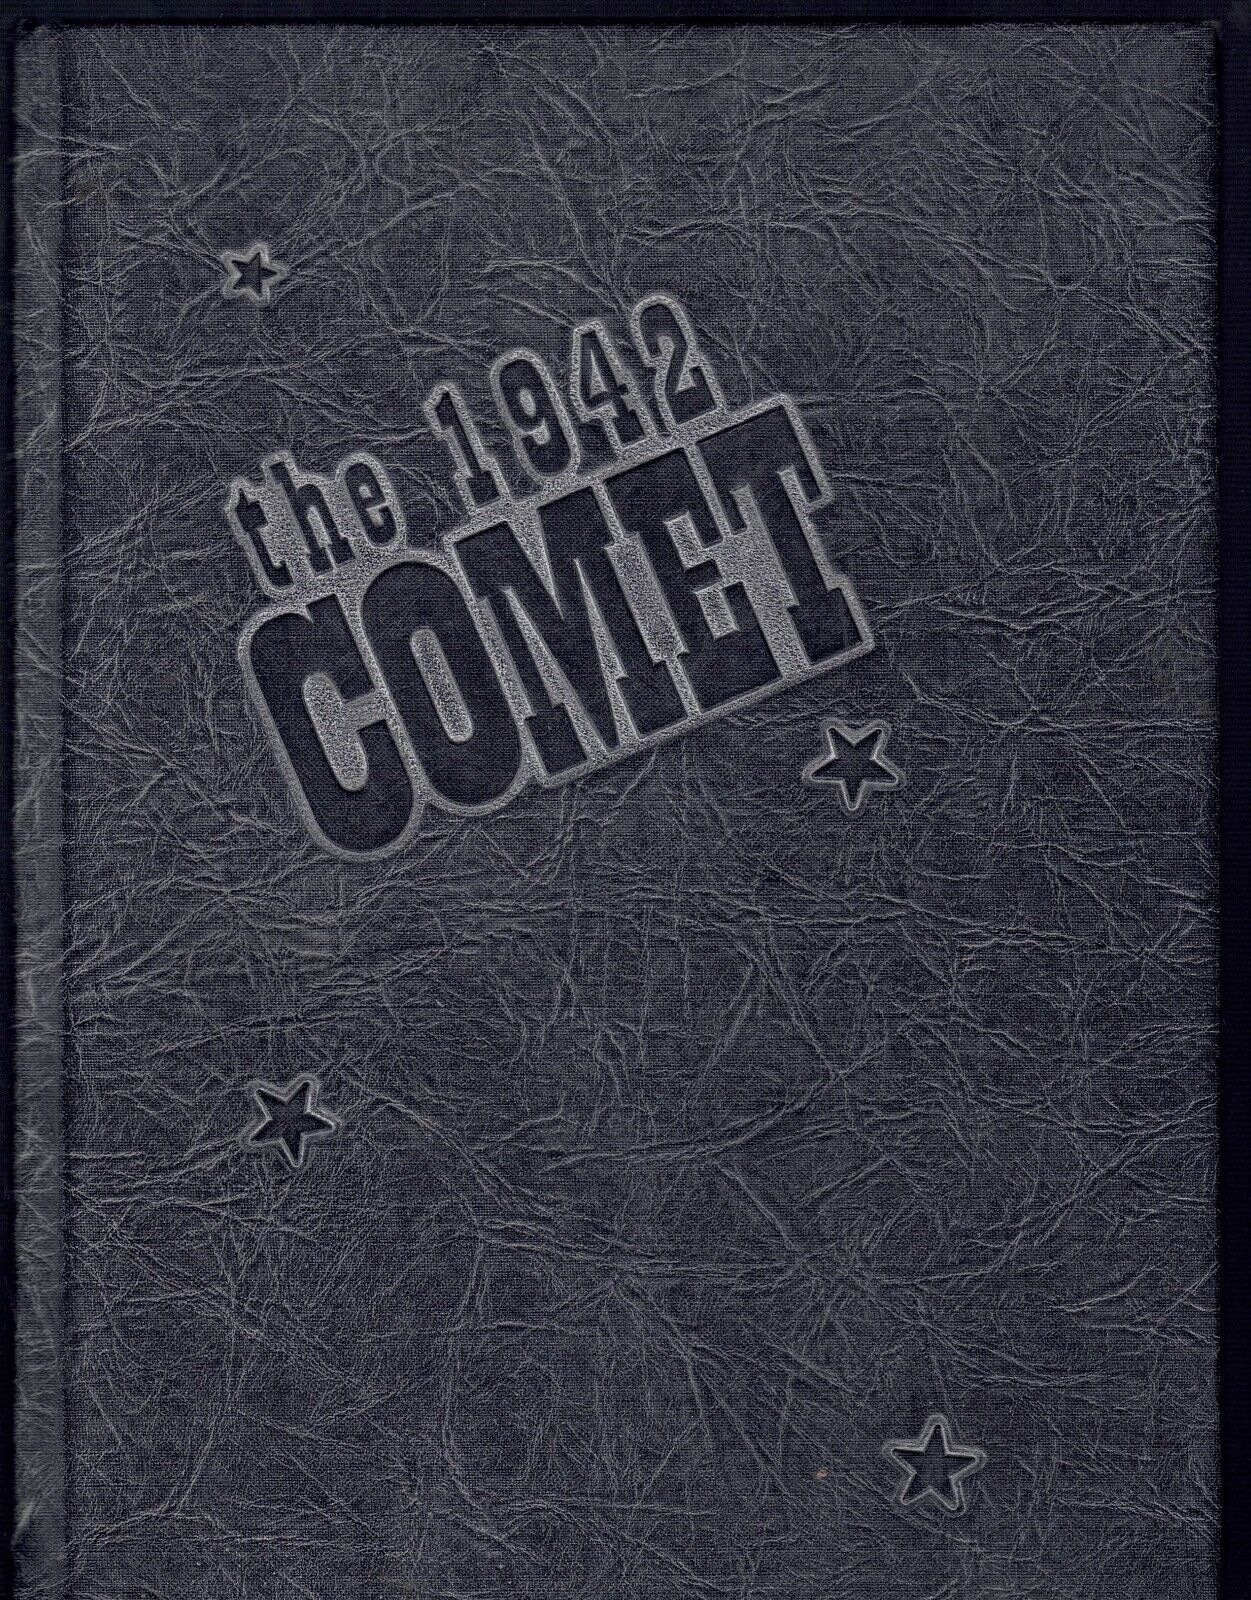 THE COMET 1942 Rupert High School Yearbook, Rupert, Idaho